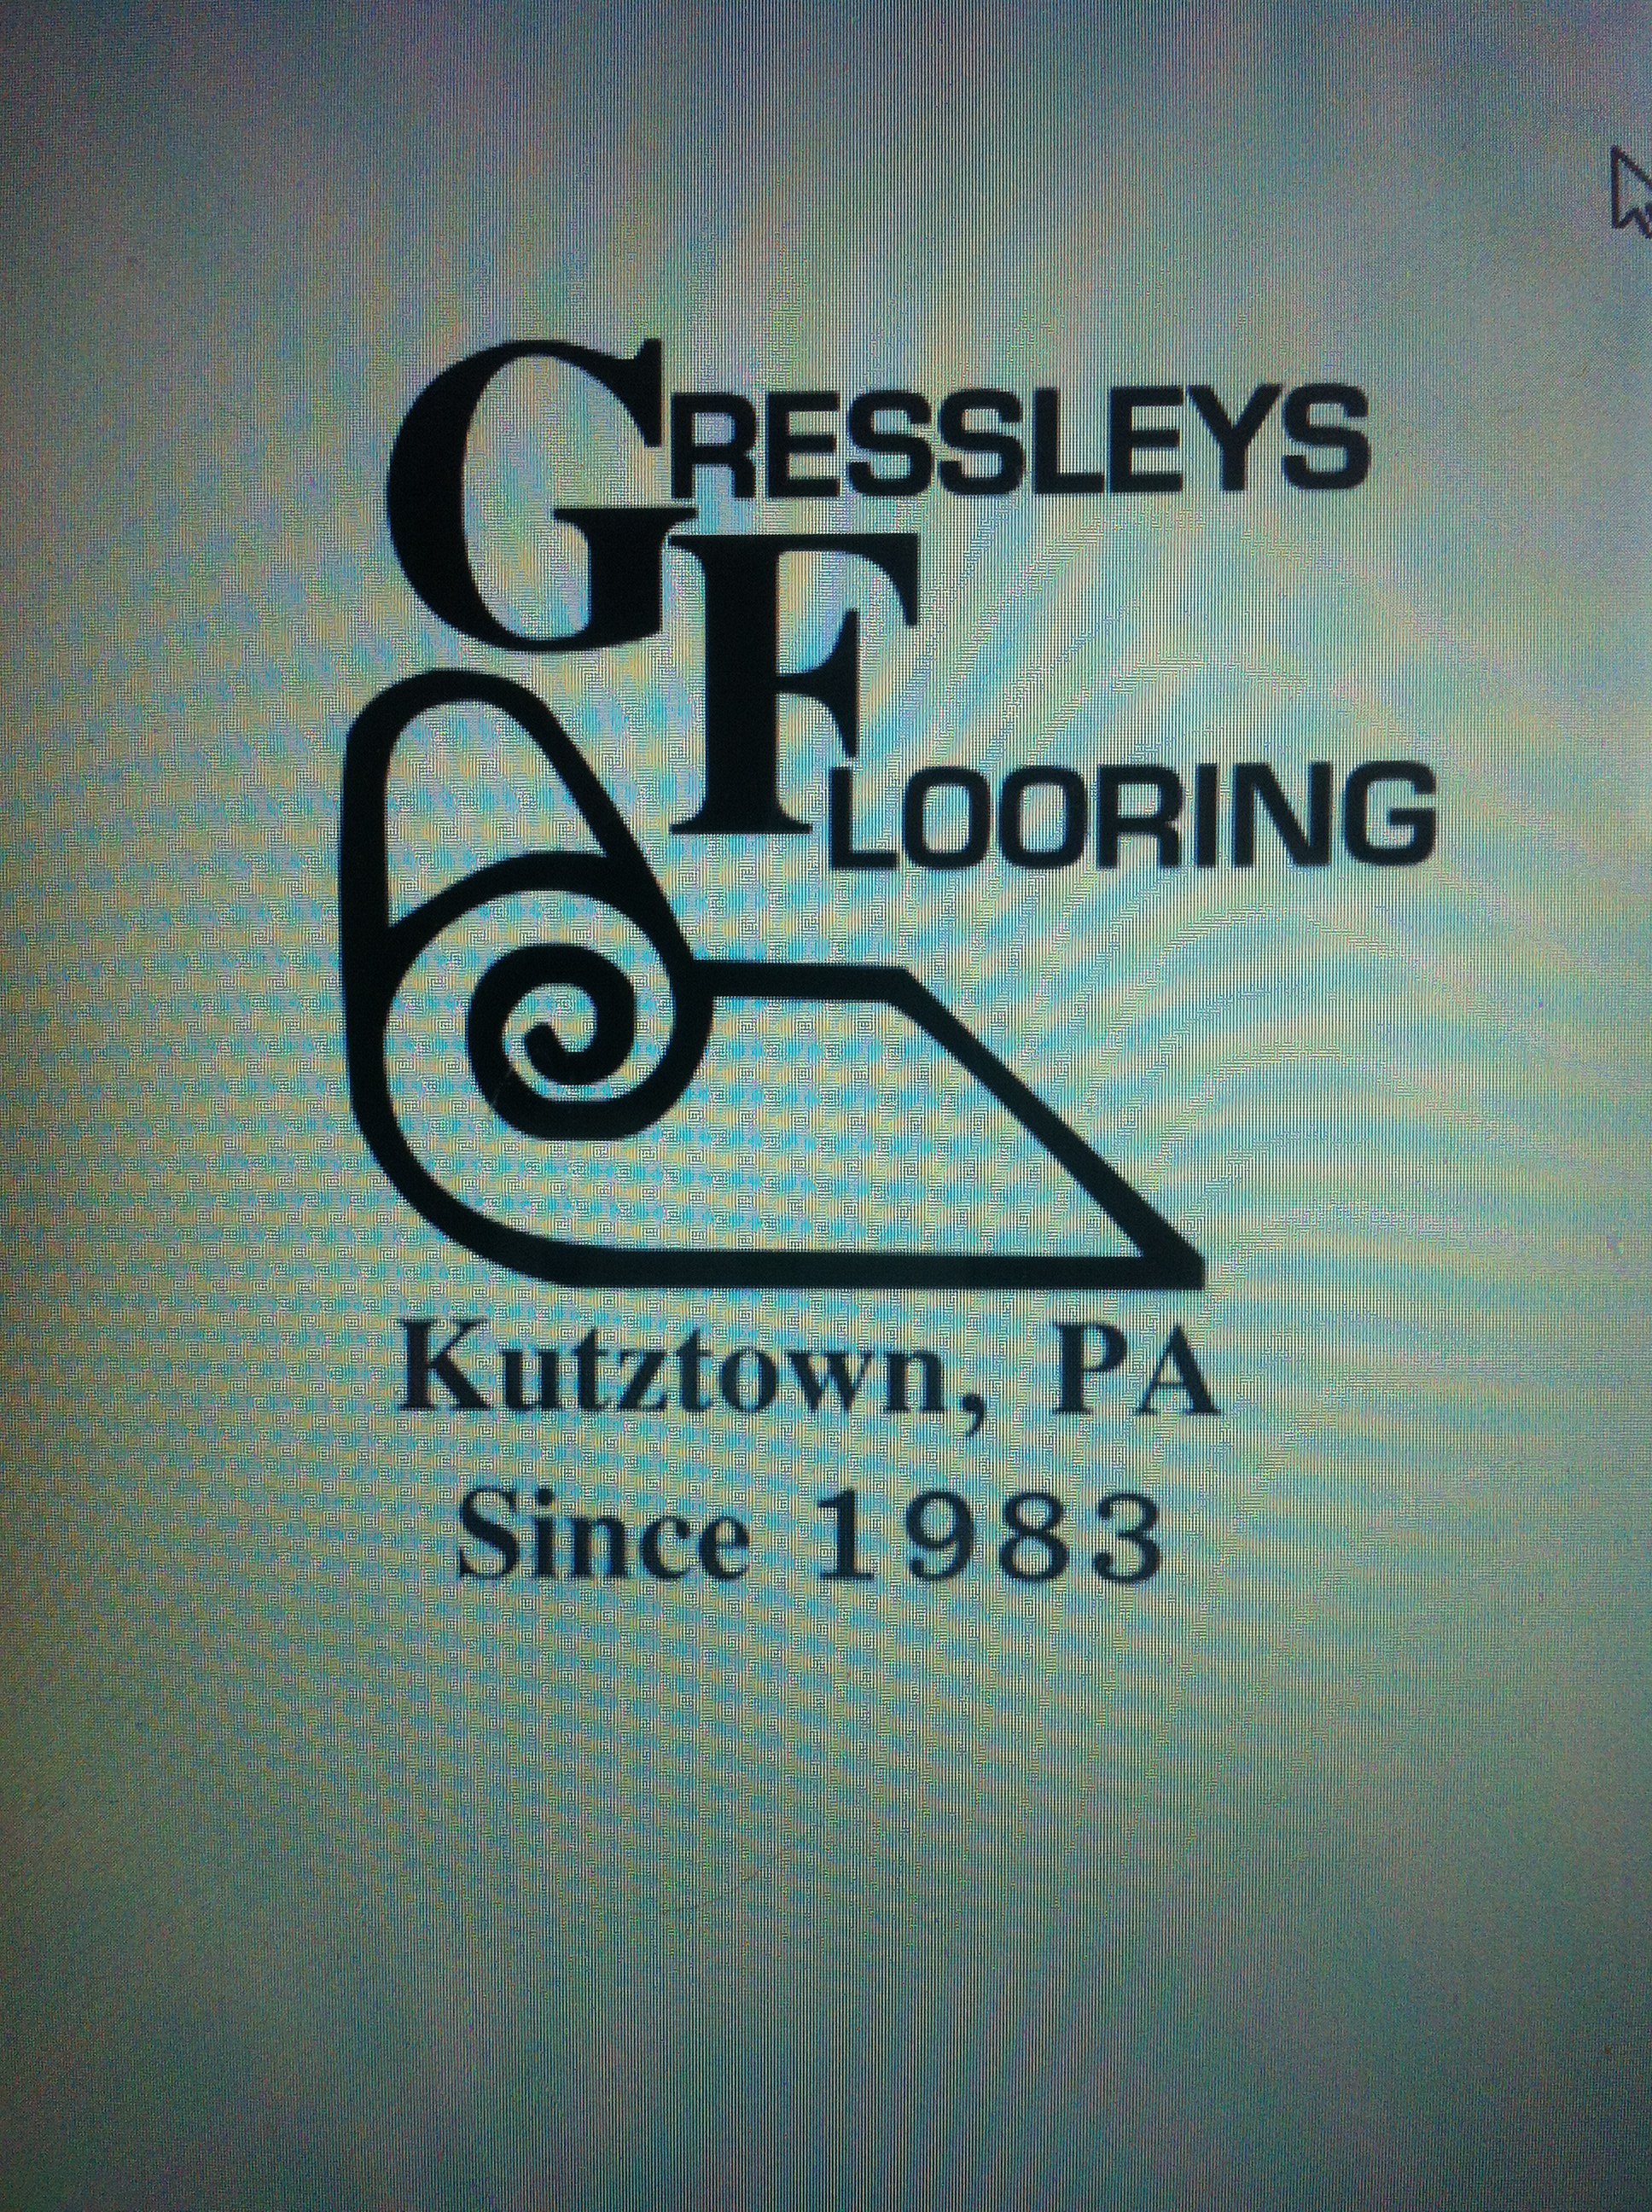 Glenn Gressley Carpet, Vinyl and Tile Logo